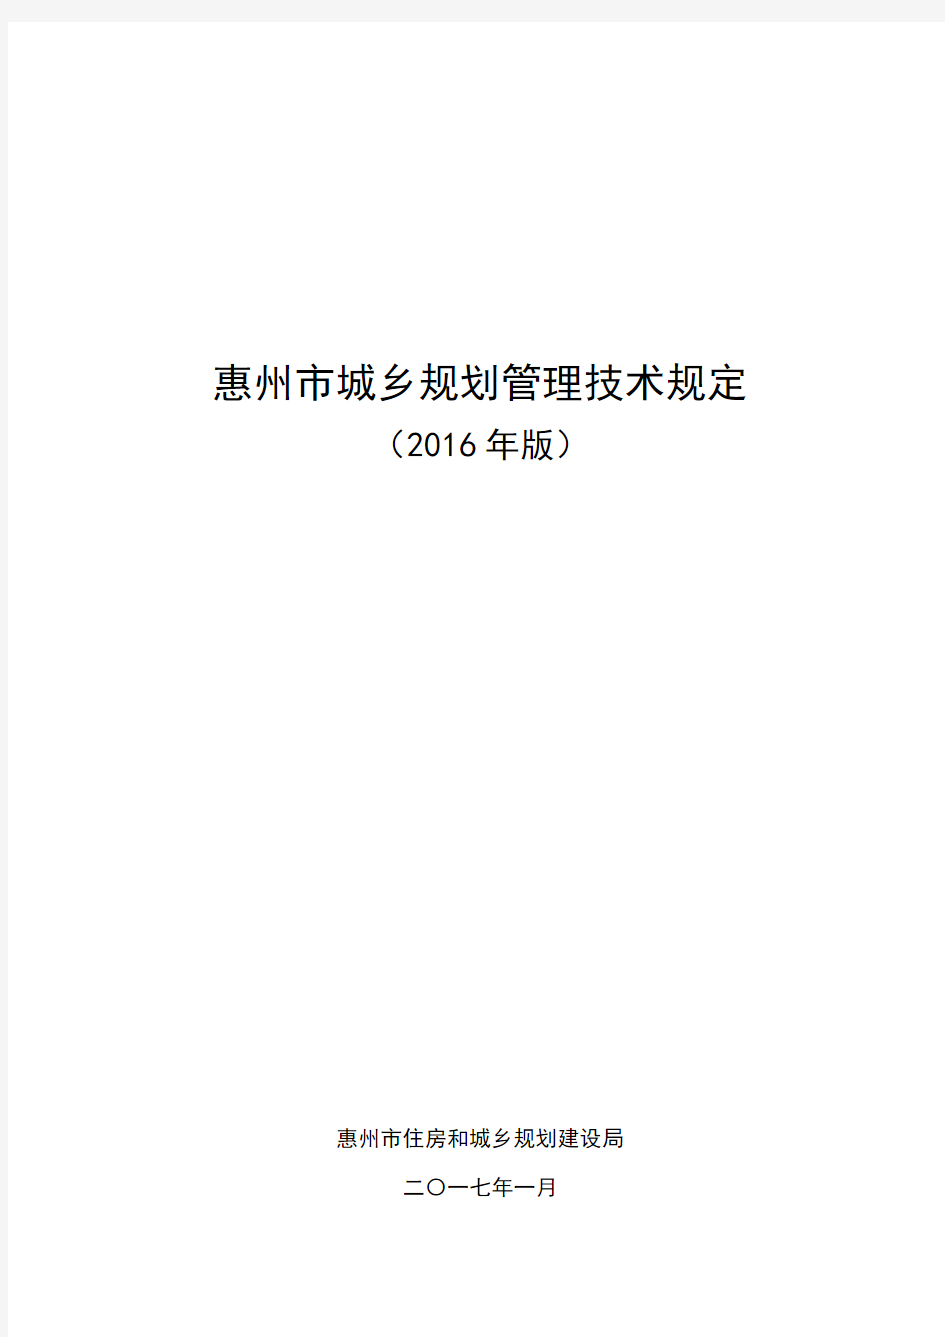 惠州市城乡规划管理技术规定(成果)